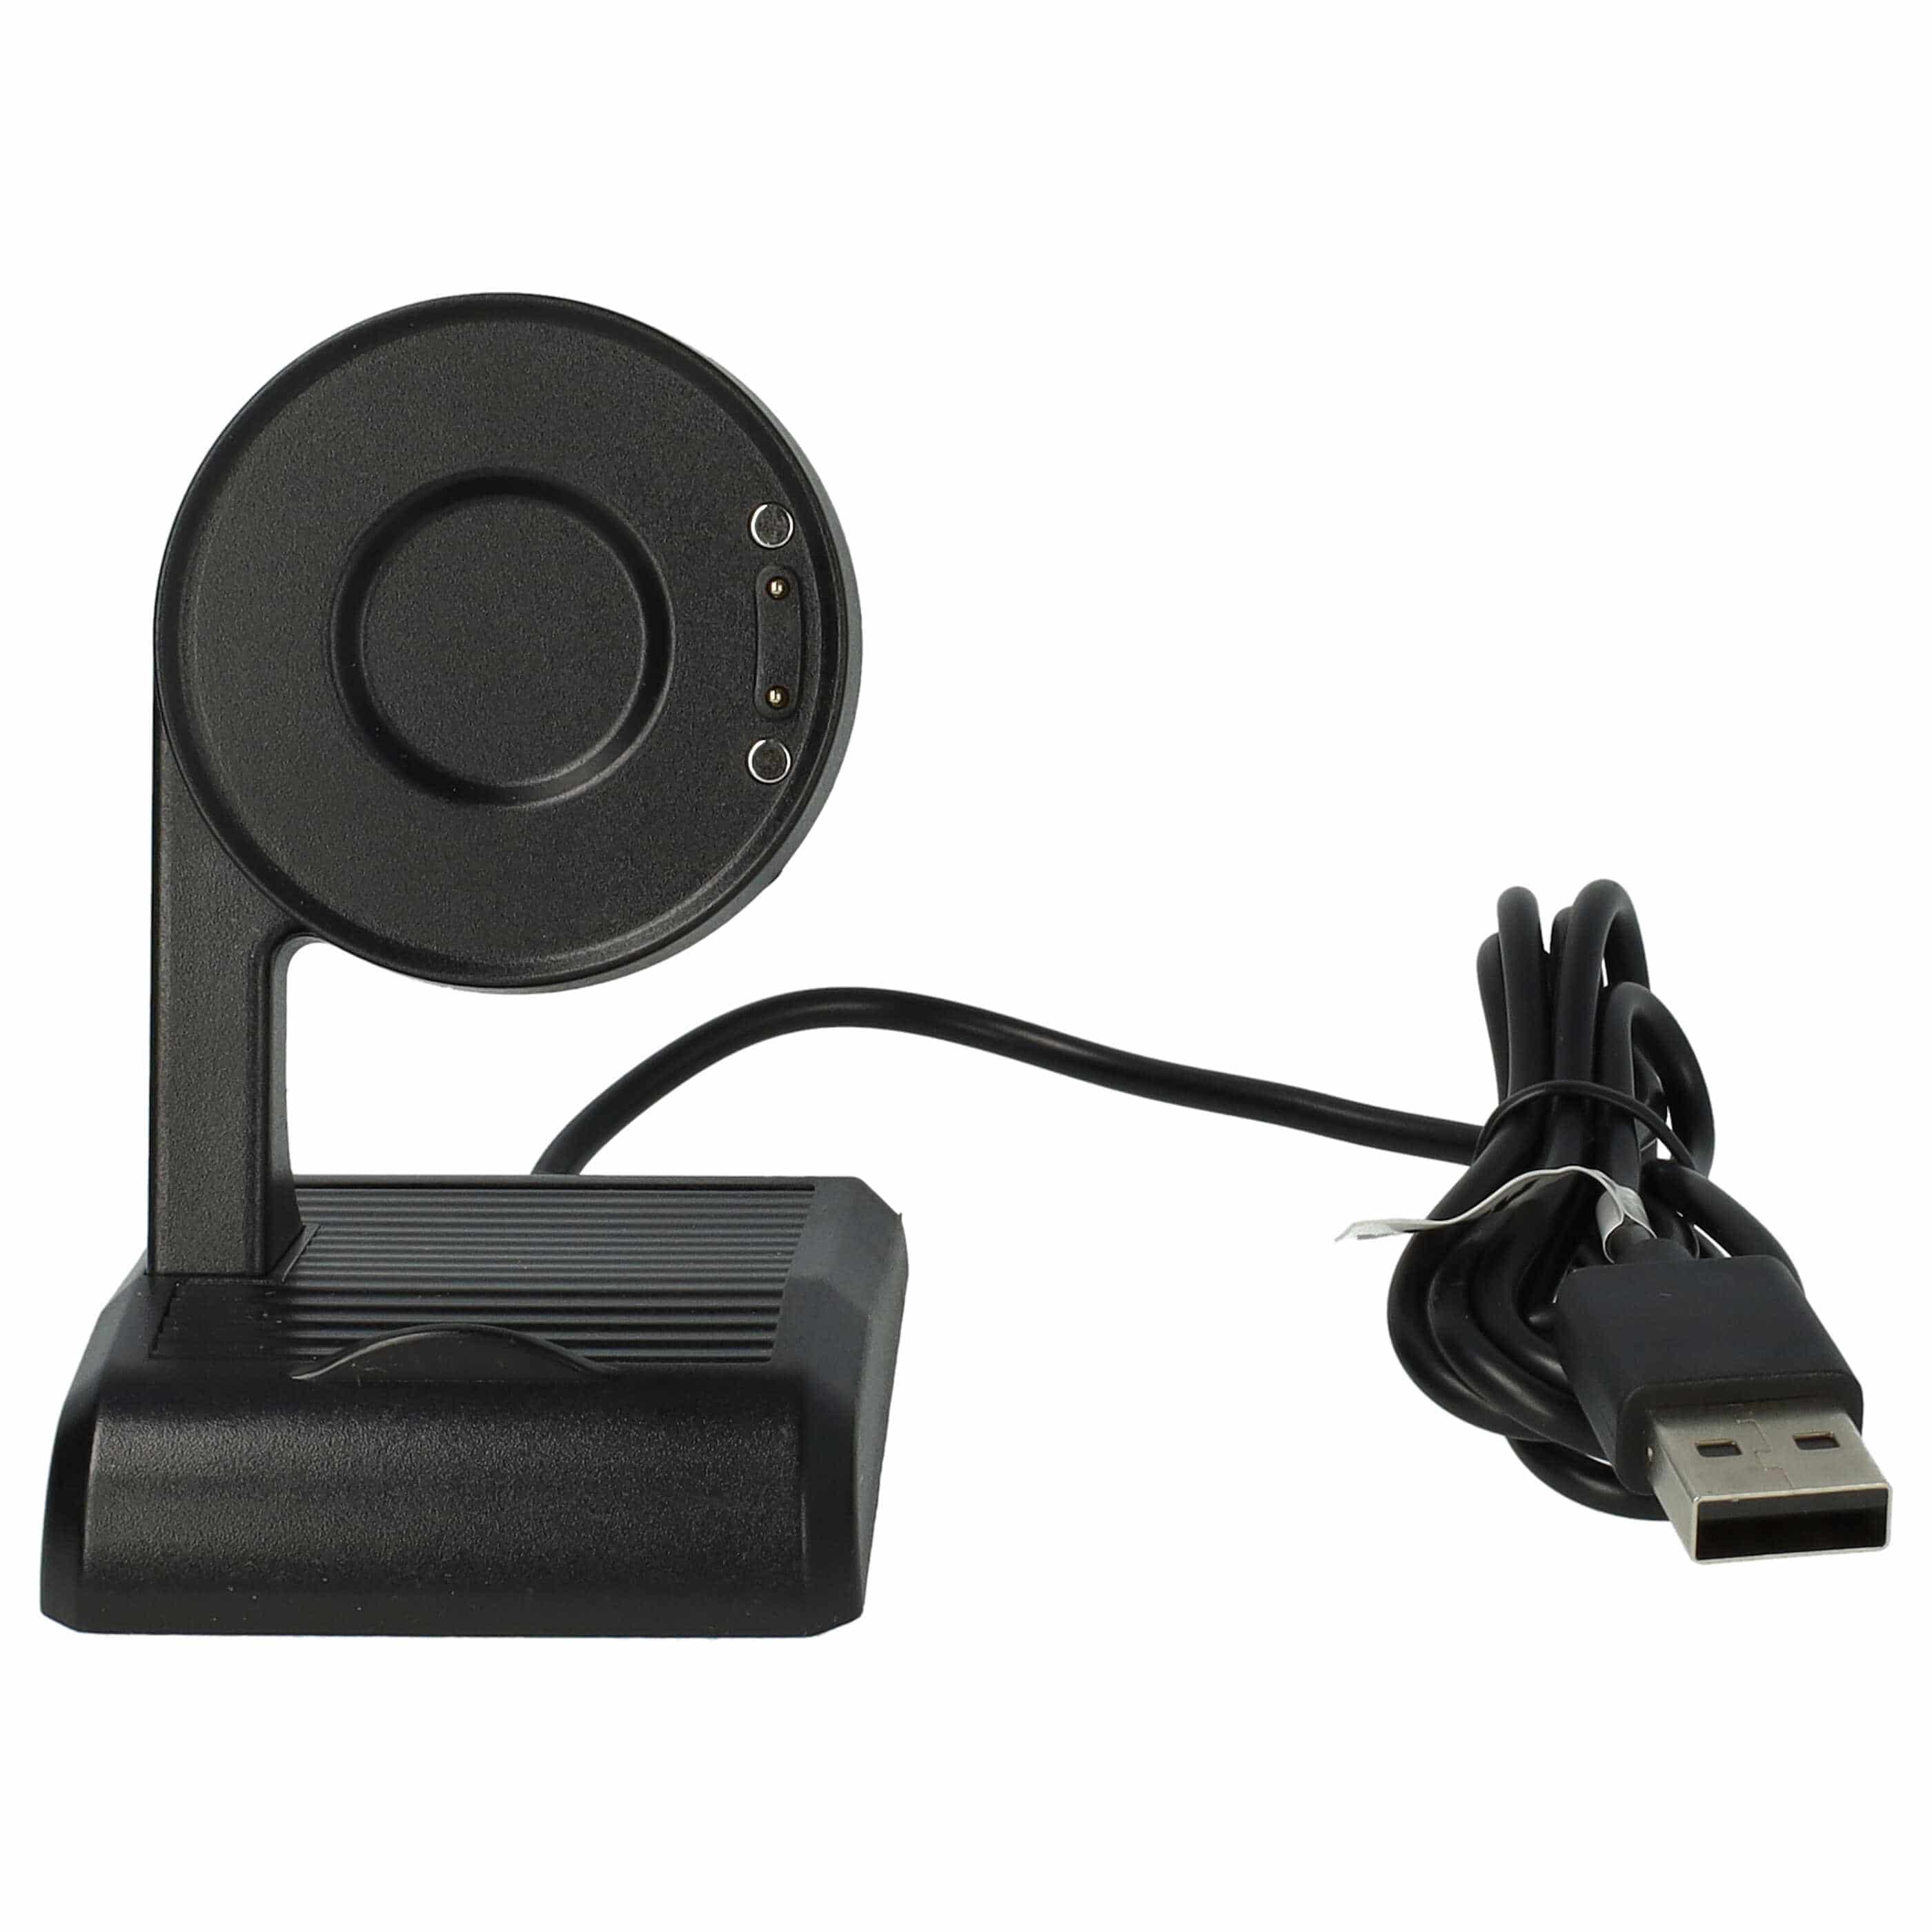 USB Charging Station suitable for Mobvoi TicWatch E3, Pro 3, Pro 3 LTE Smartwatch - 100 cm, black